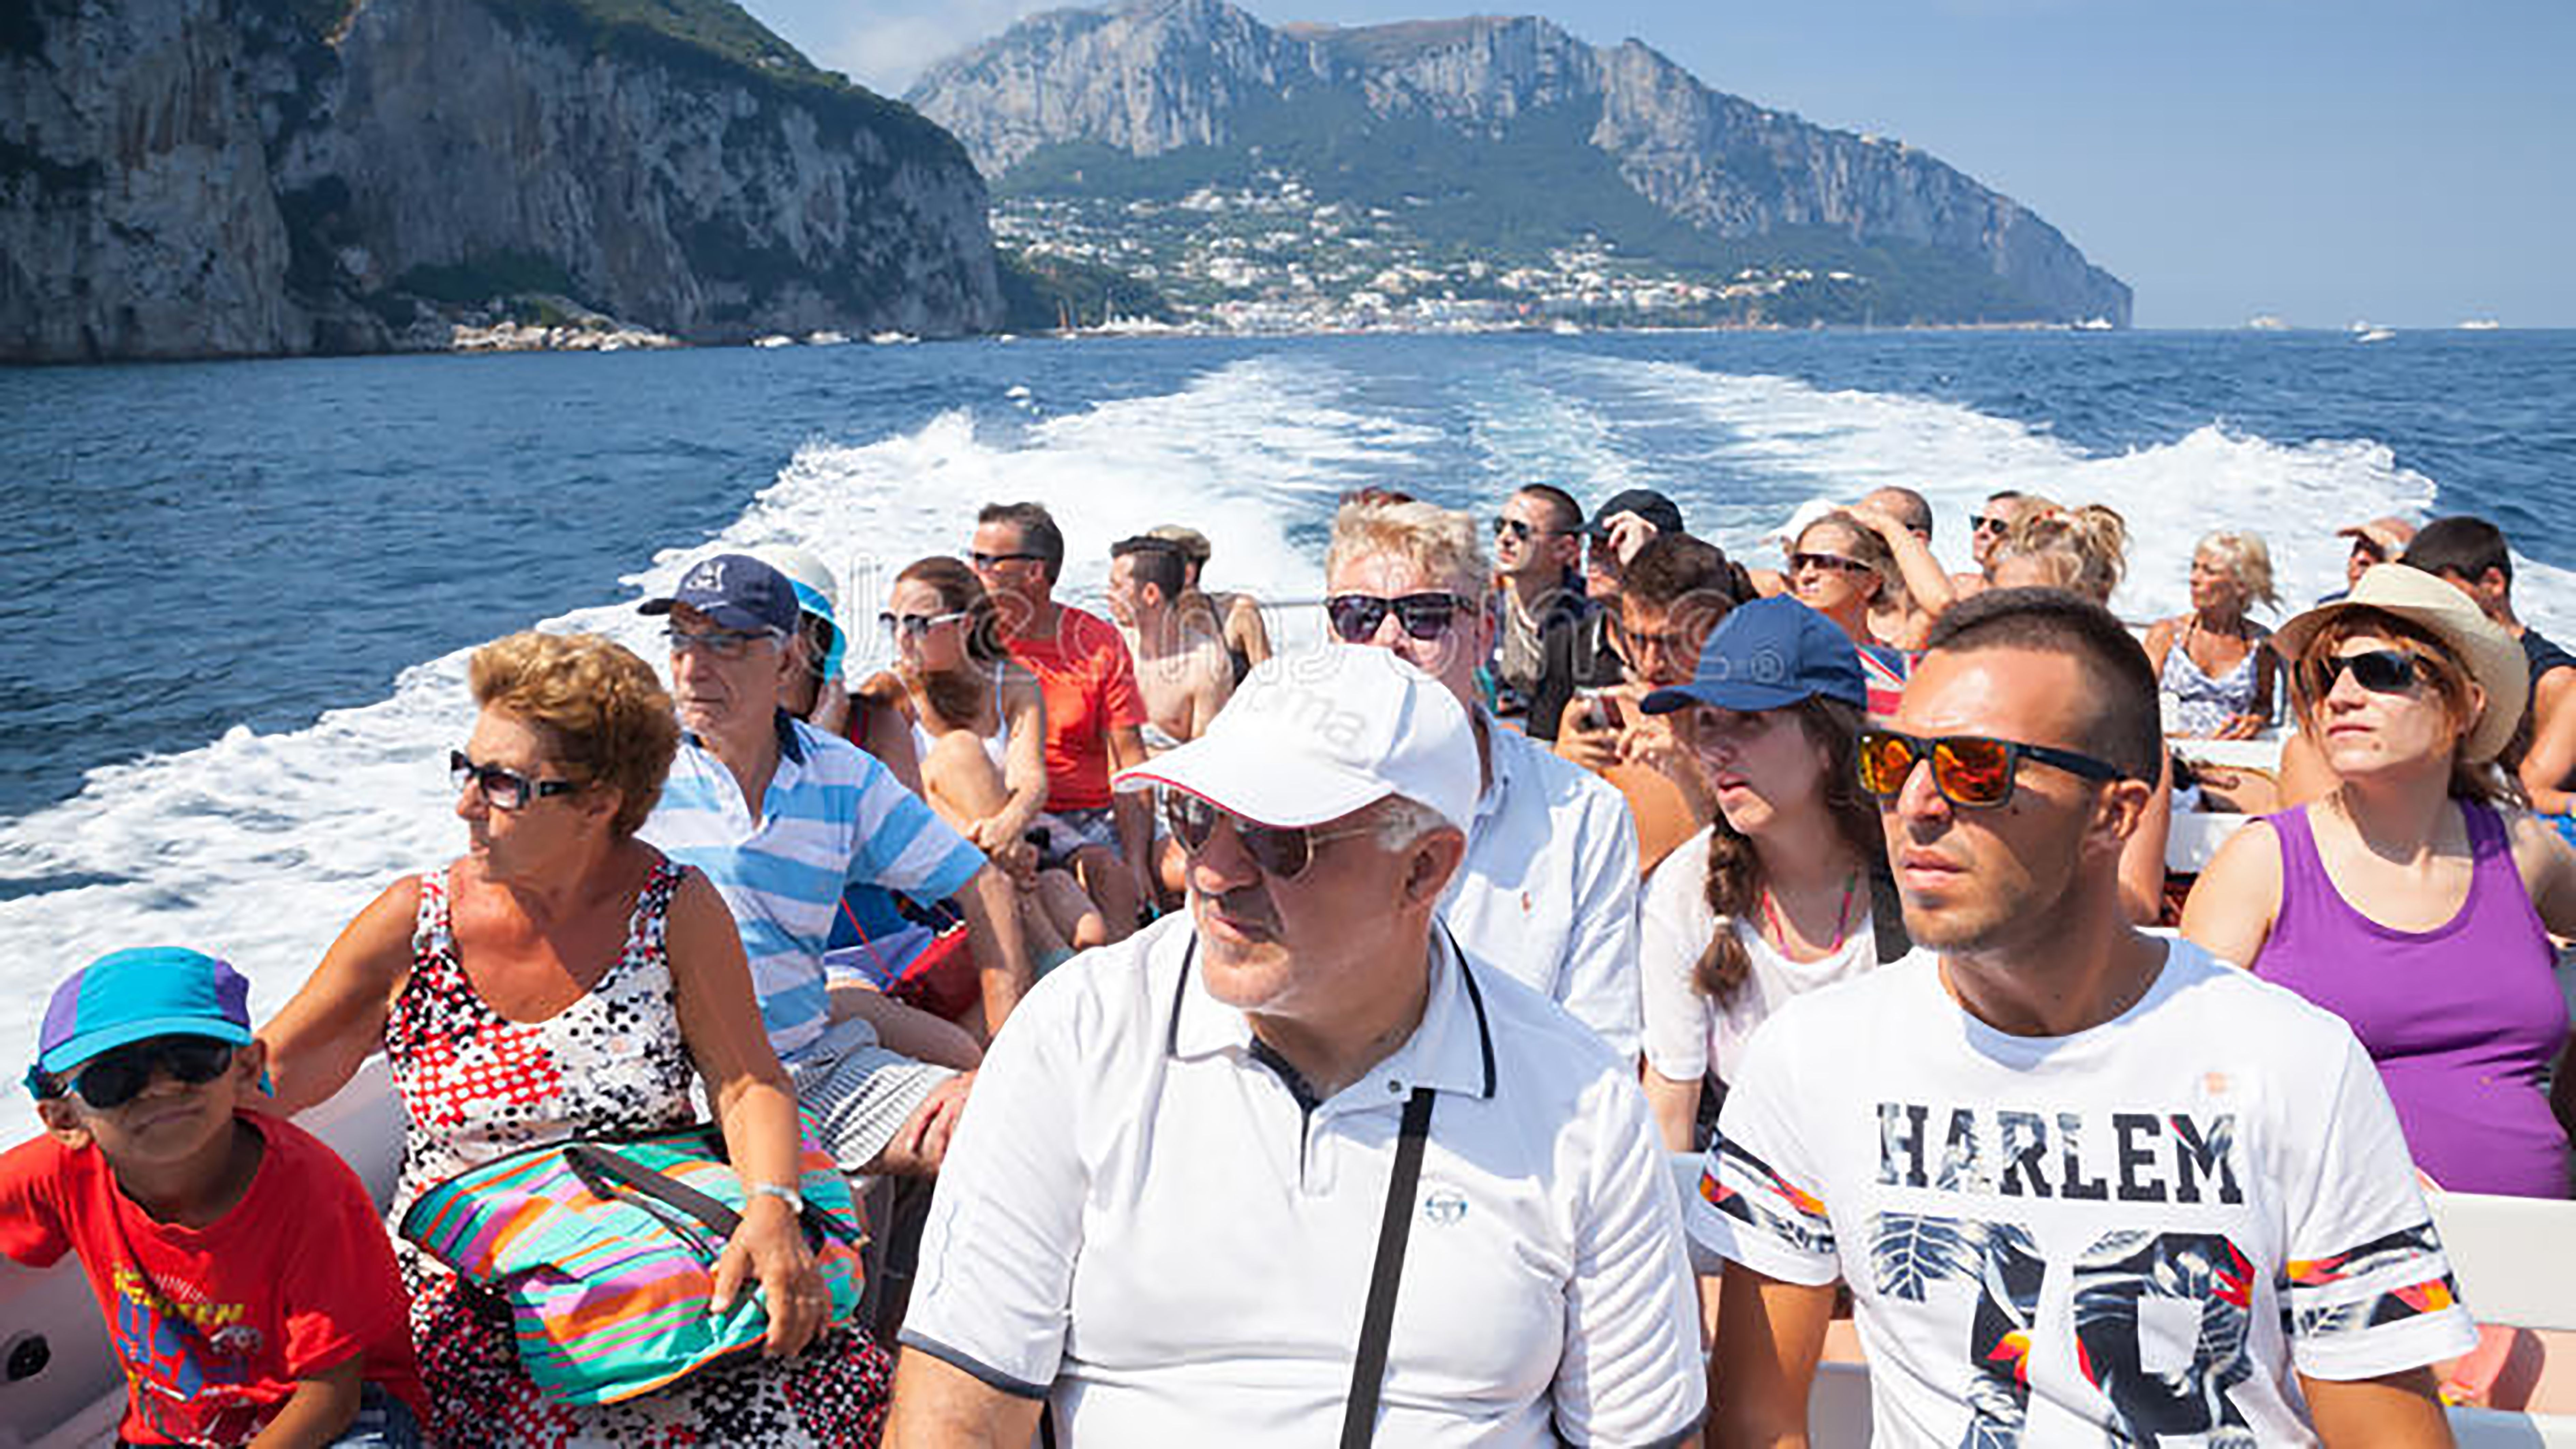 Італійський острів Капрі запровадить додаткову плату для туристів